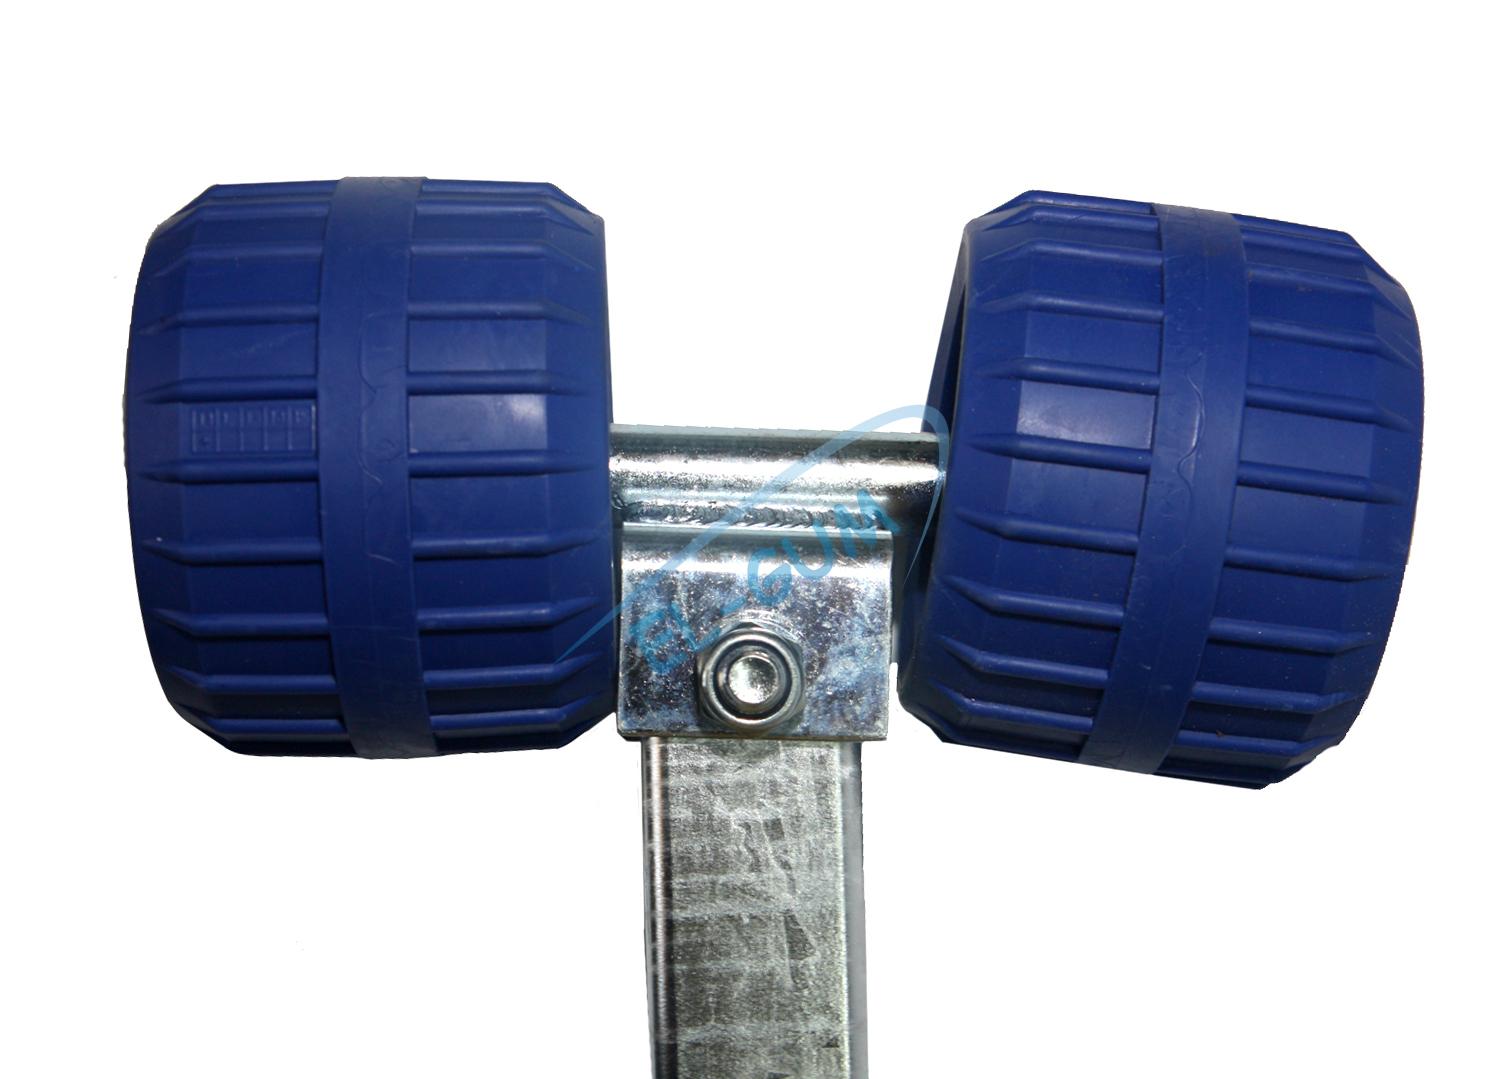 Zestaw Podpora rolkowa TW-1/L1- wysokość całkowita 385 mm – kolor niebieski